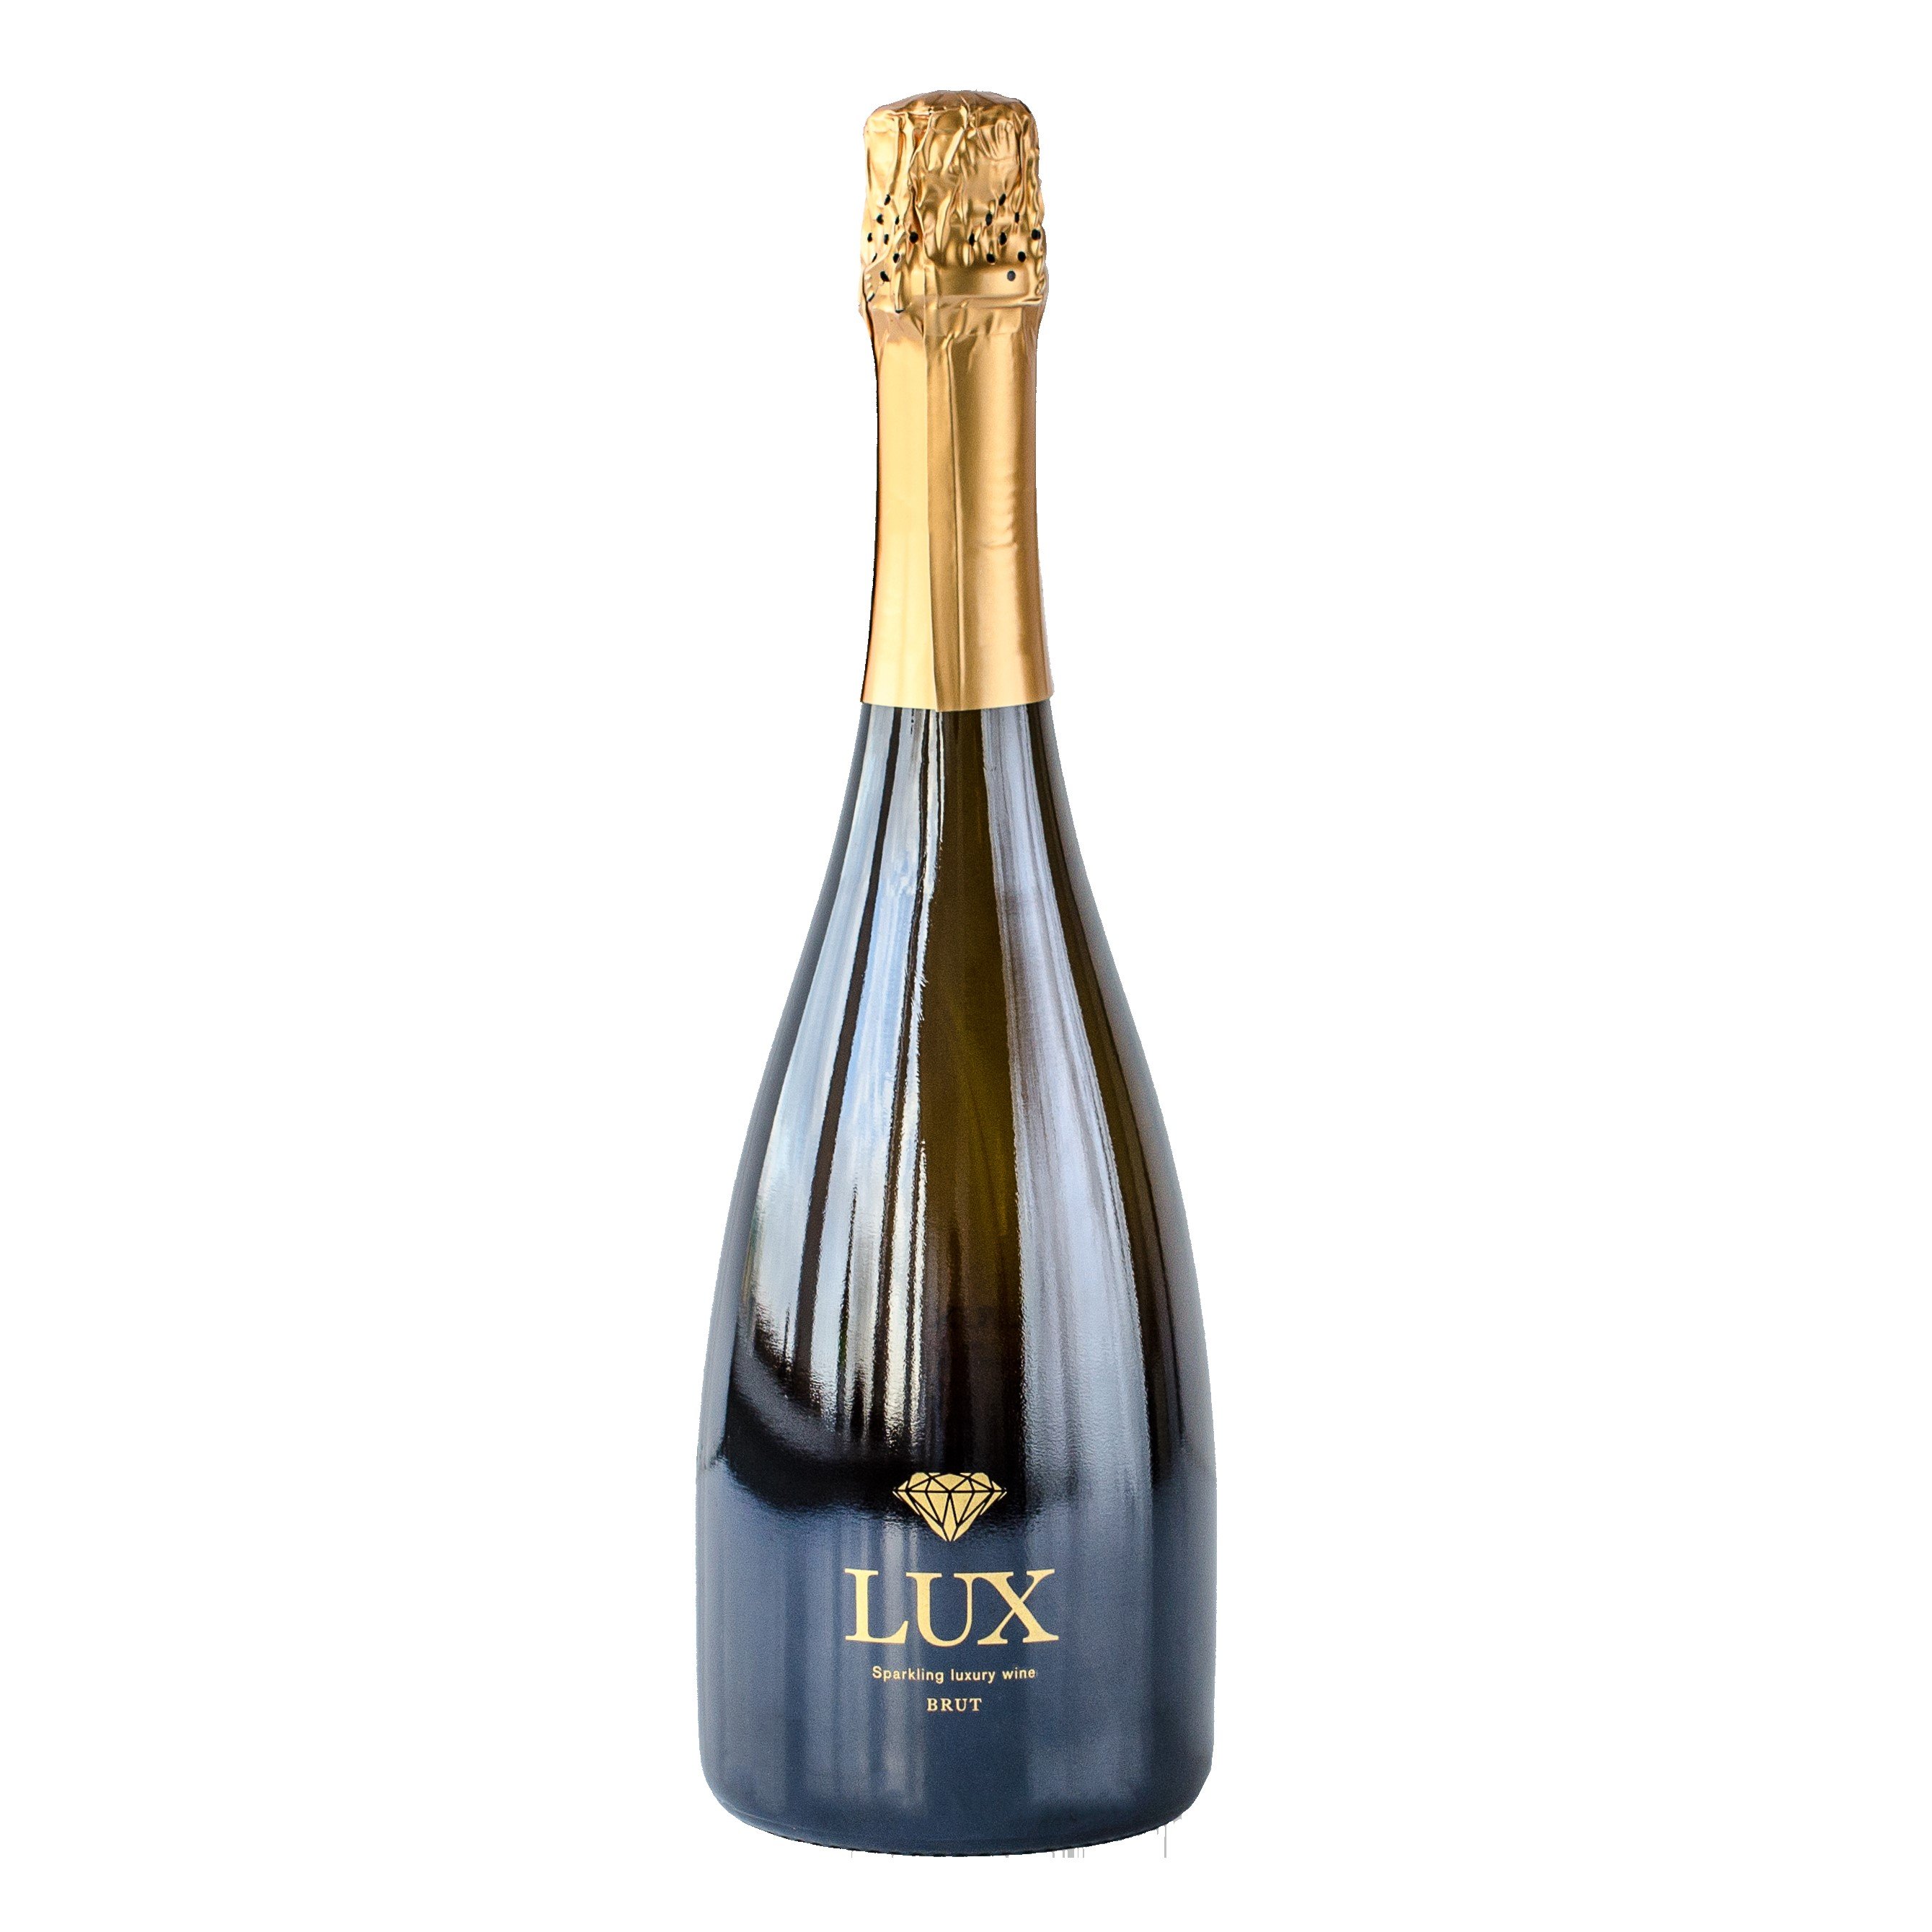 LUX Brut - Sparkling Luxury Wine - 750 ml